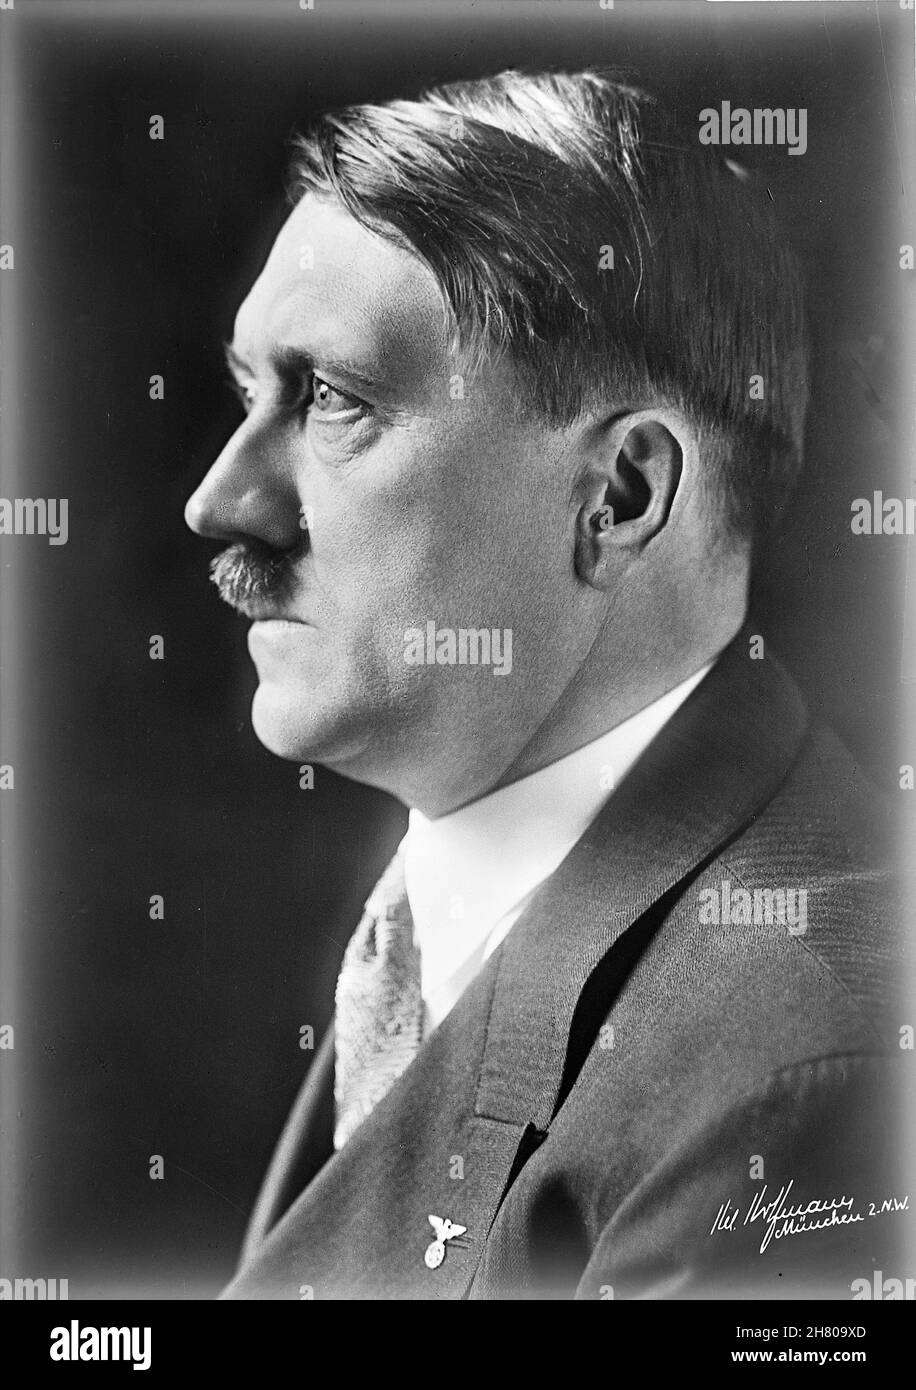 GERMANIA - circa 1935 - Studio ritratto dell'allora cancelliere tedesco, Adolf Hitler - Foto: Geopix Foto Stock